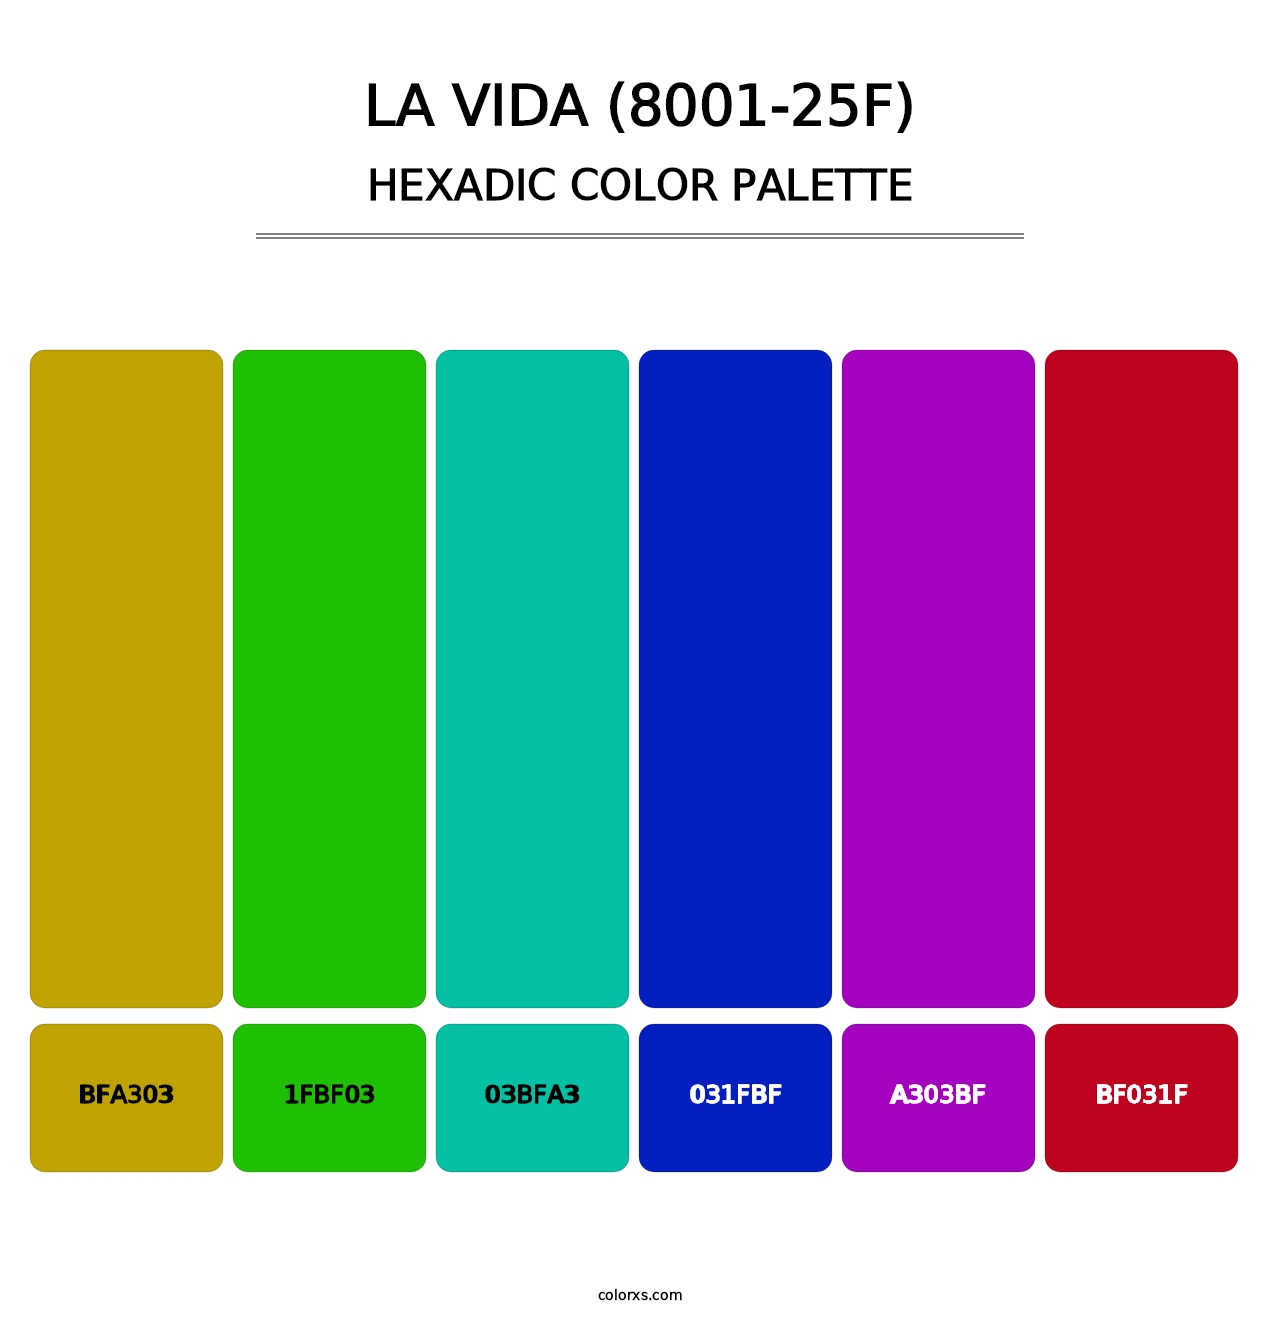 La Vida (8001-25F) - Hexadic Color Palette